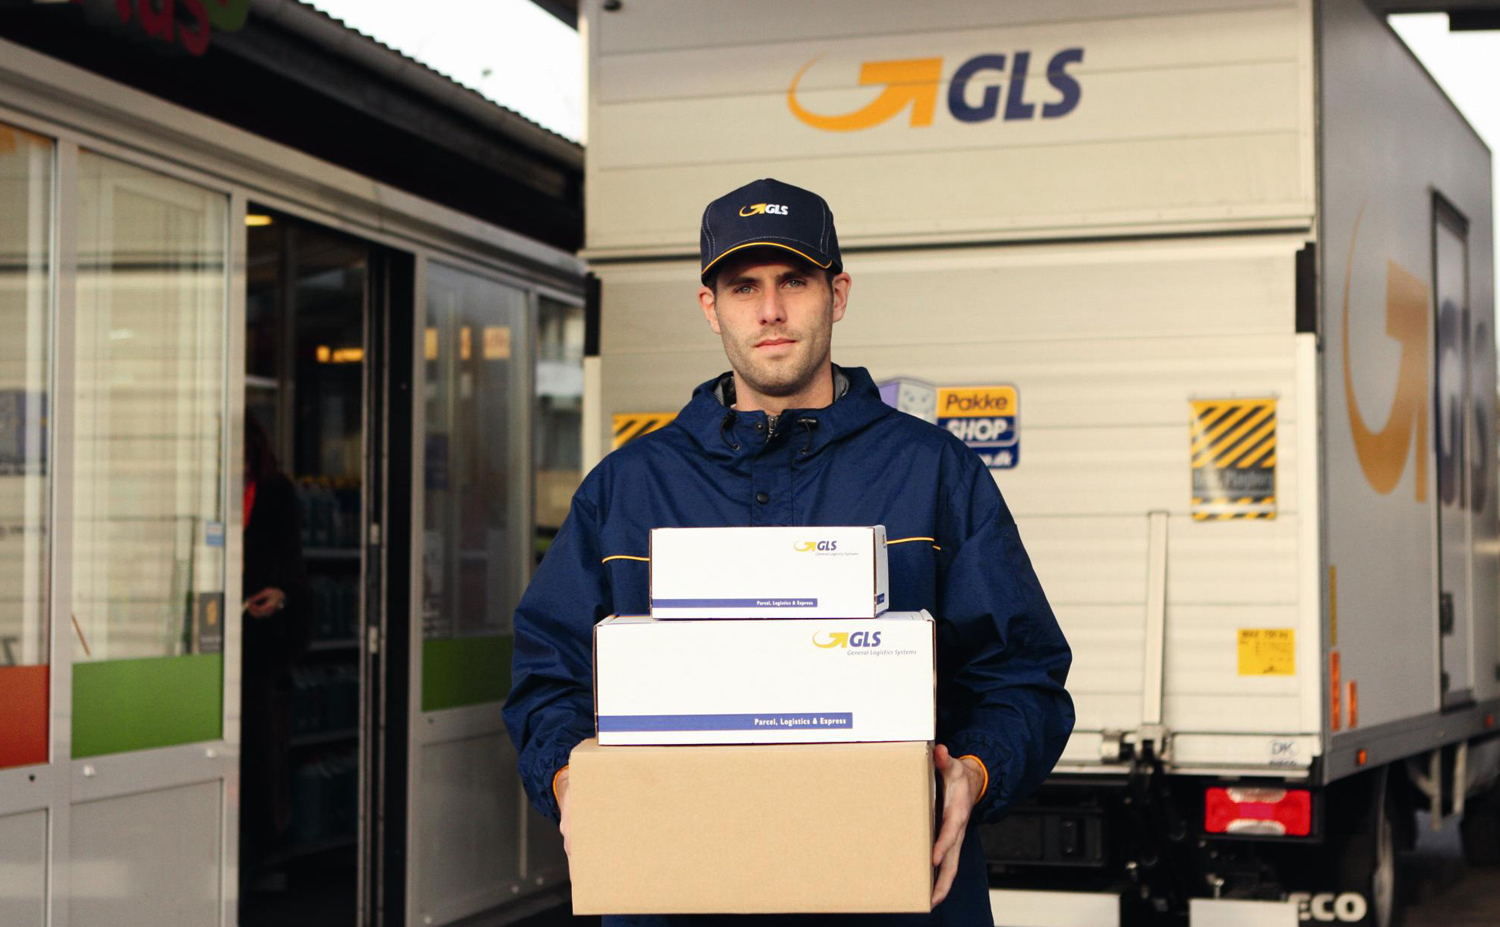 Переслав германия. GLS Курьерская служба. GLS почта. GLS tracking parcel. Бокс для курьера.